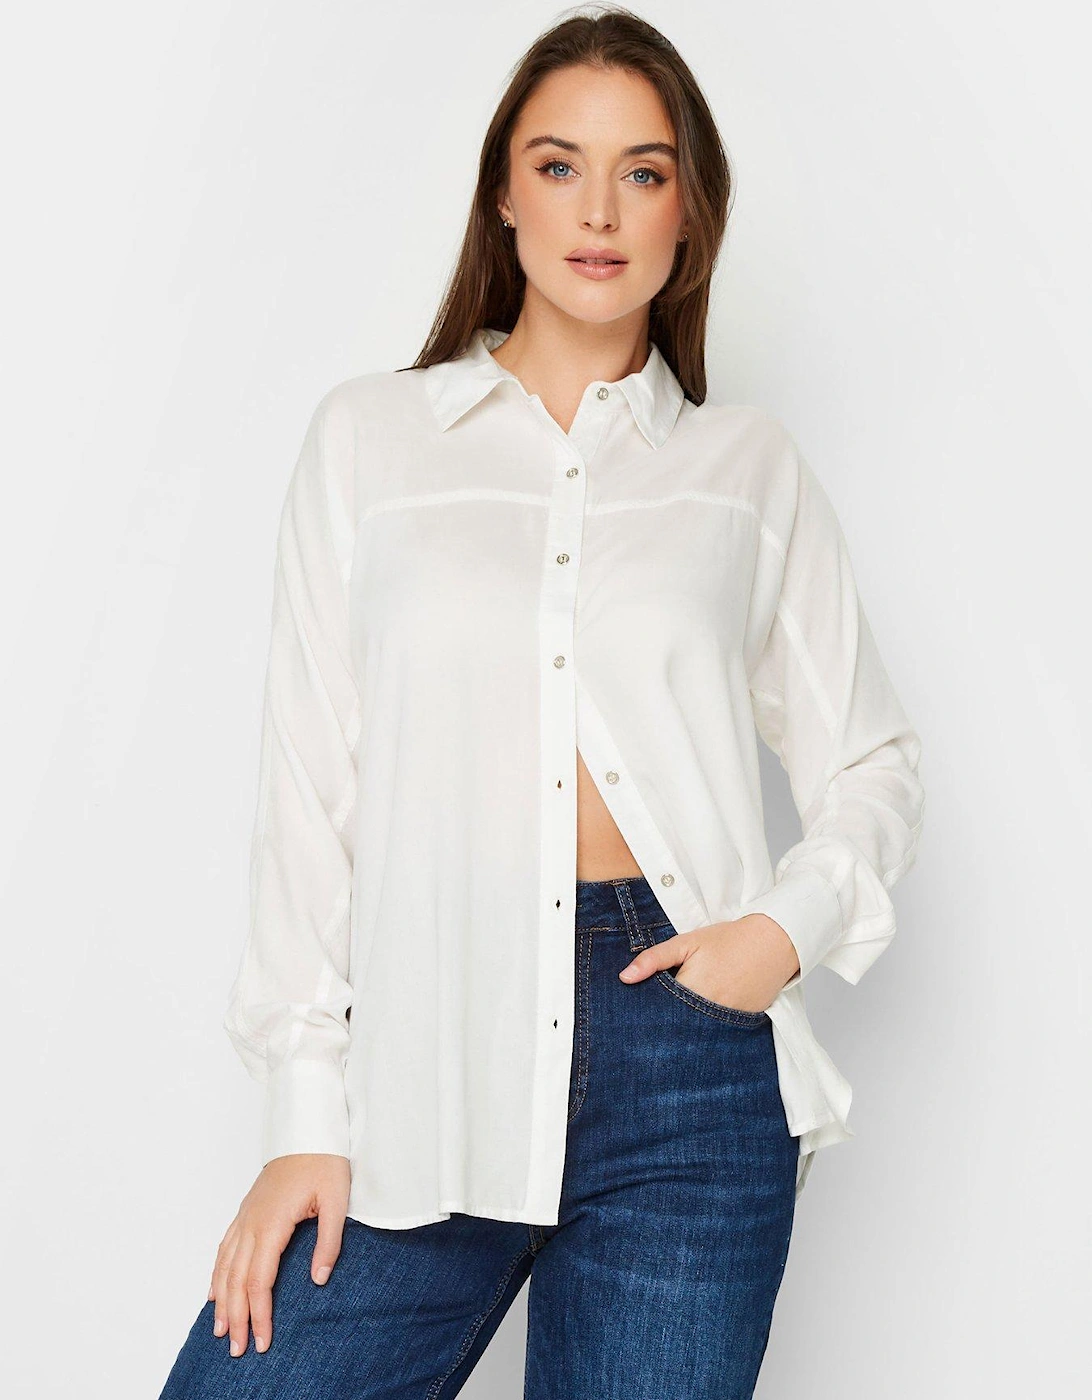 Ivory Long Sleeve Shirt, 2 of 1